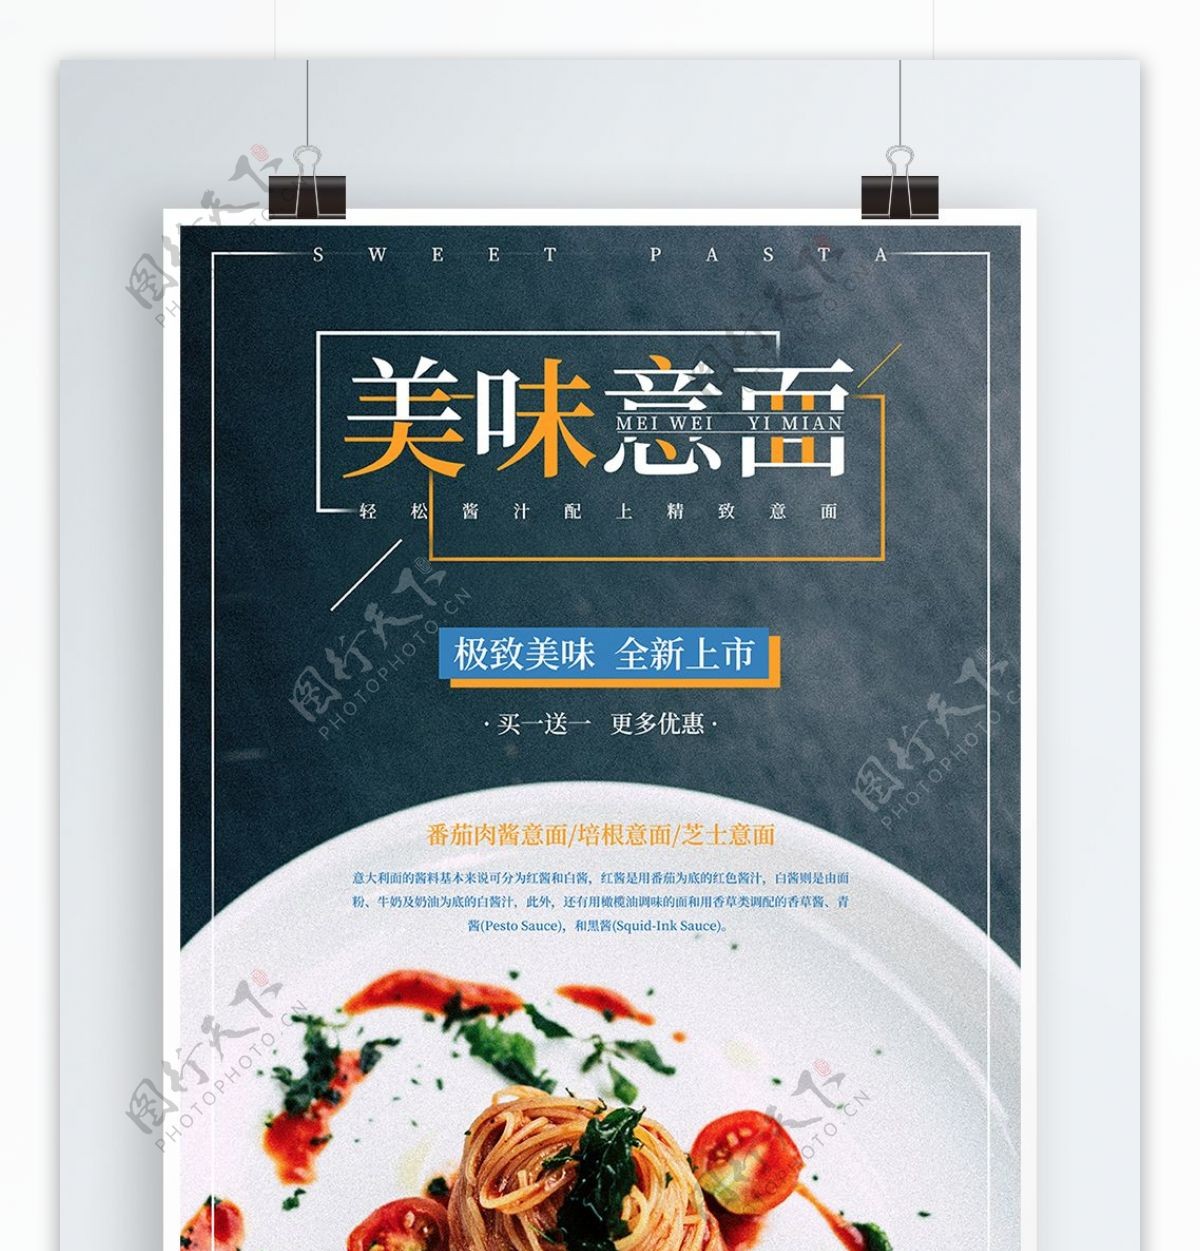 美食西餐意面促销宣传海报